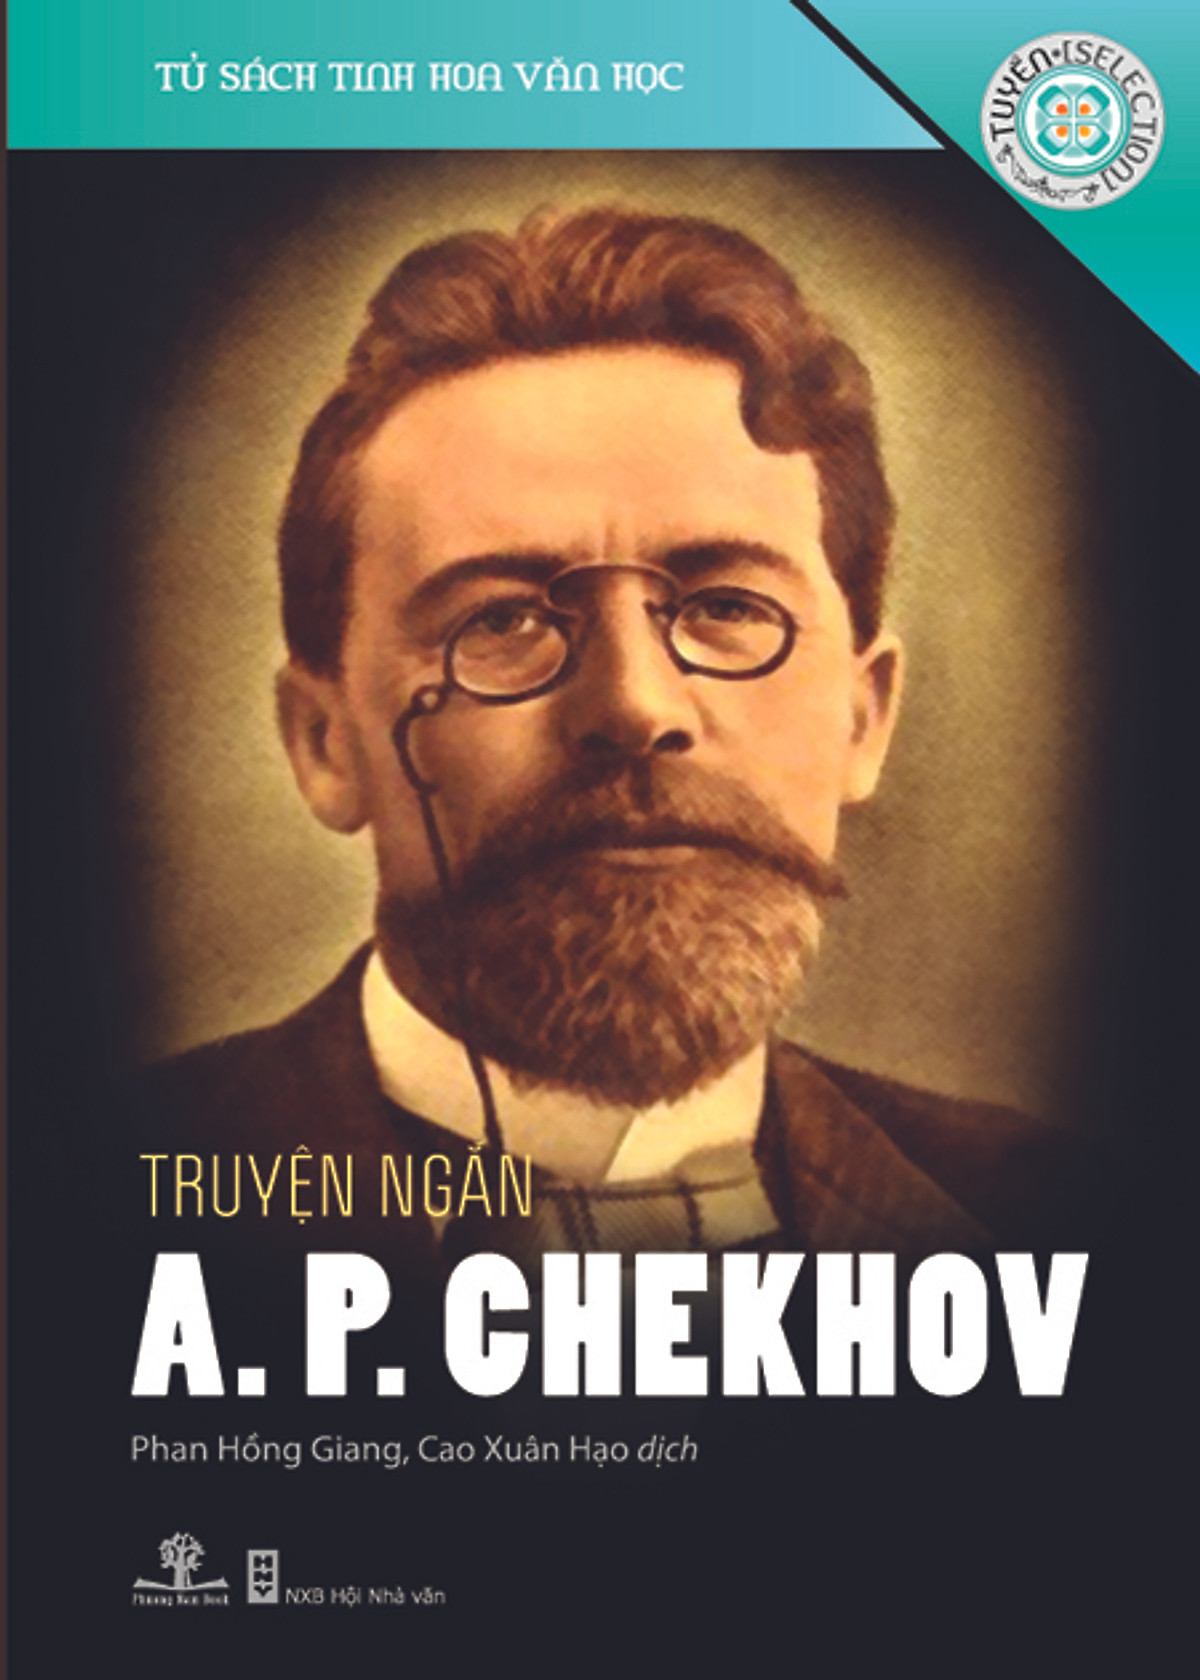 Truyện Ngắn A.P. Chekhov (Tủ Sách Tinh Hoa Văn Học)